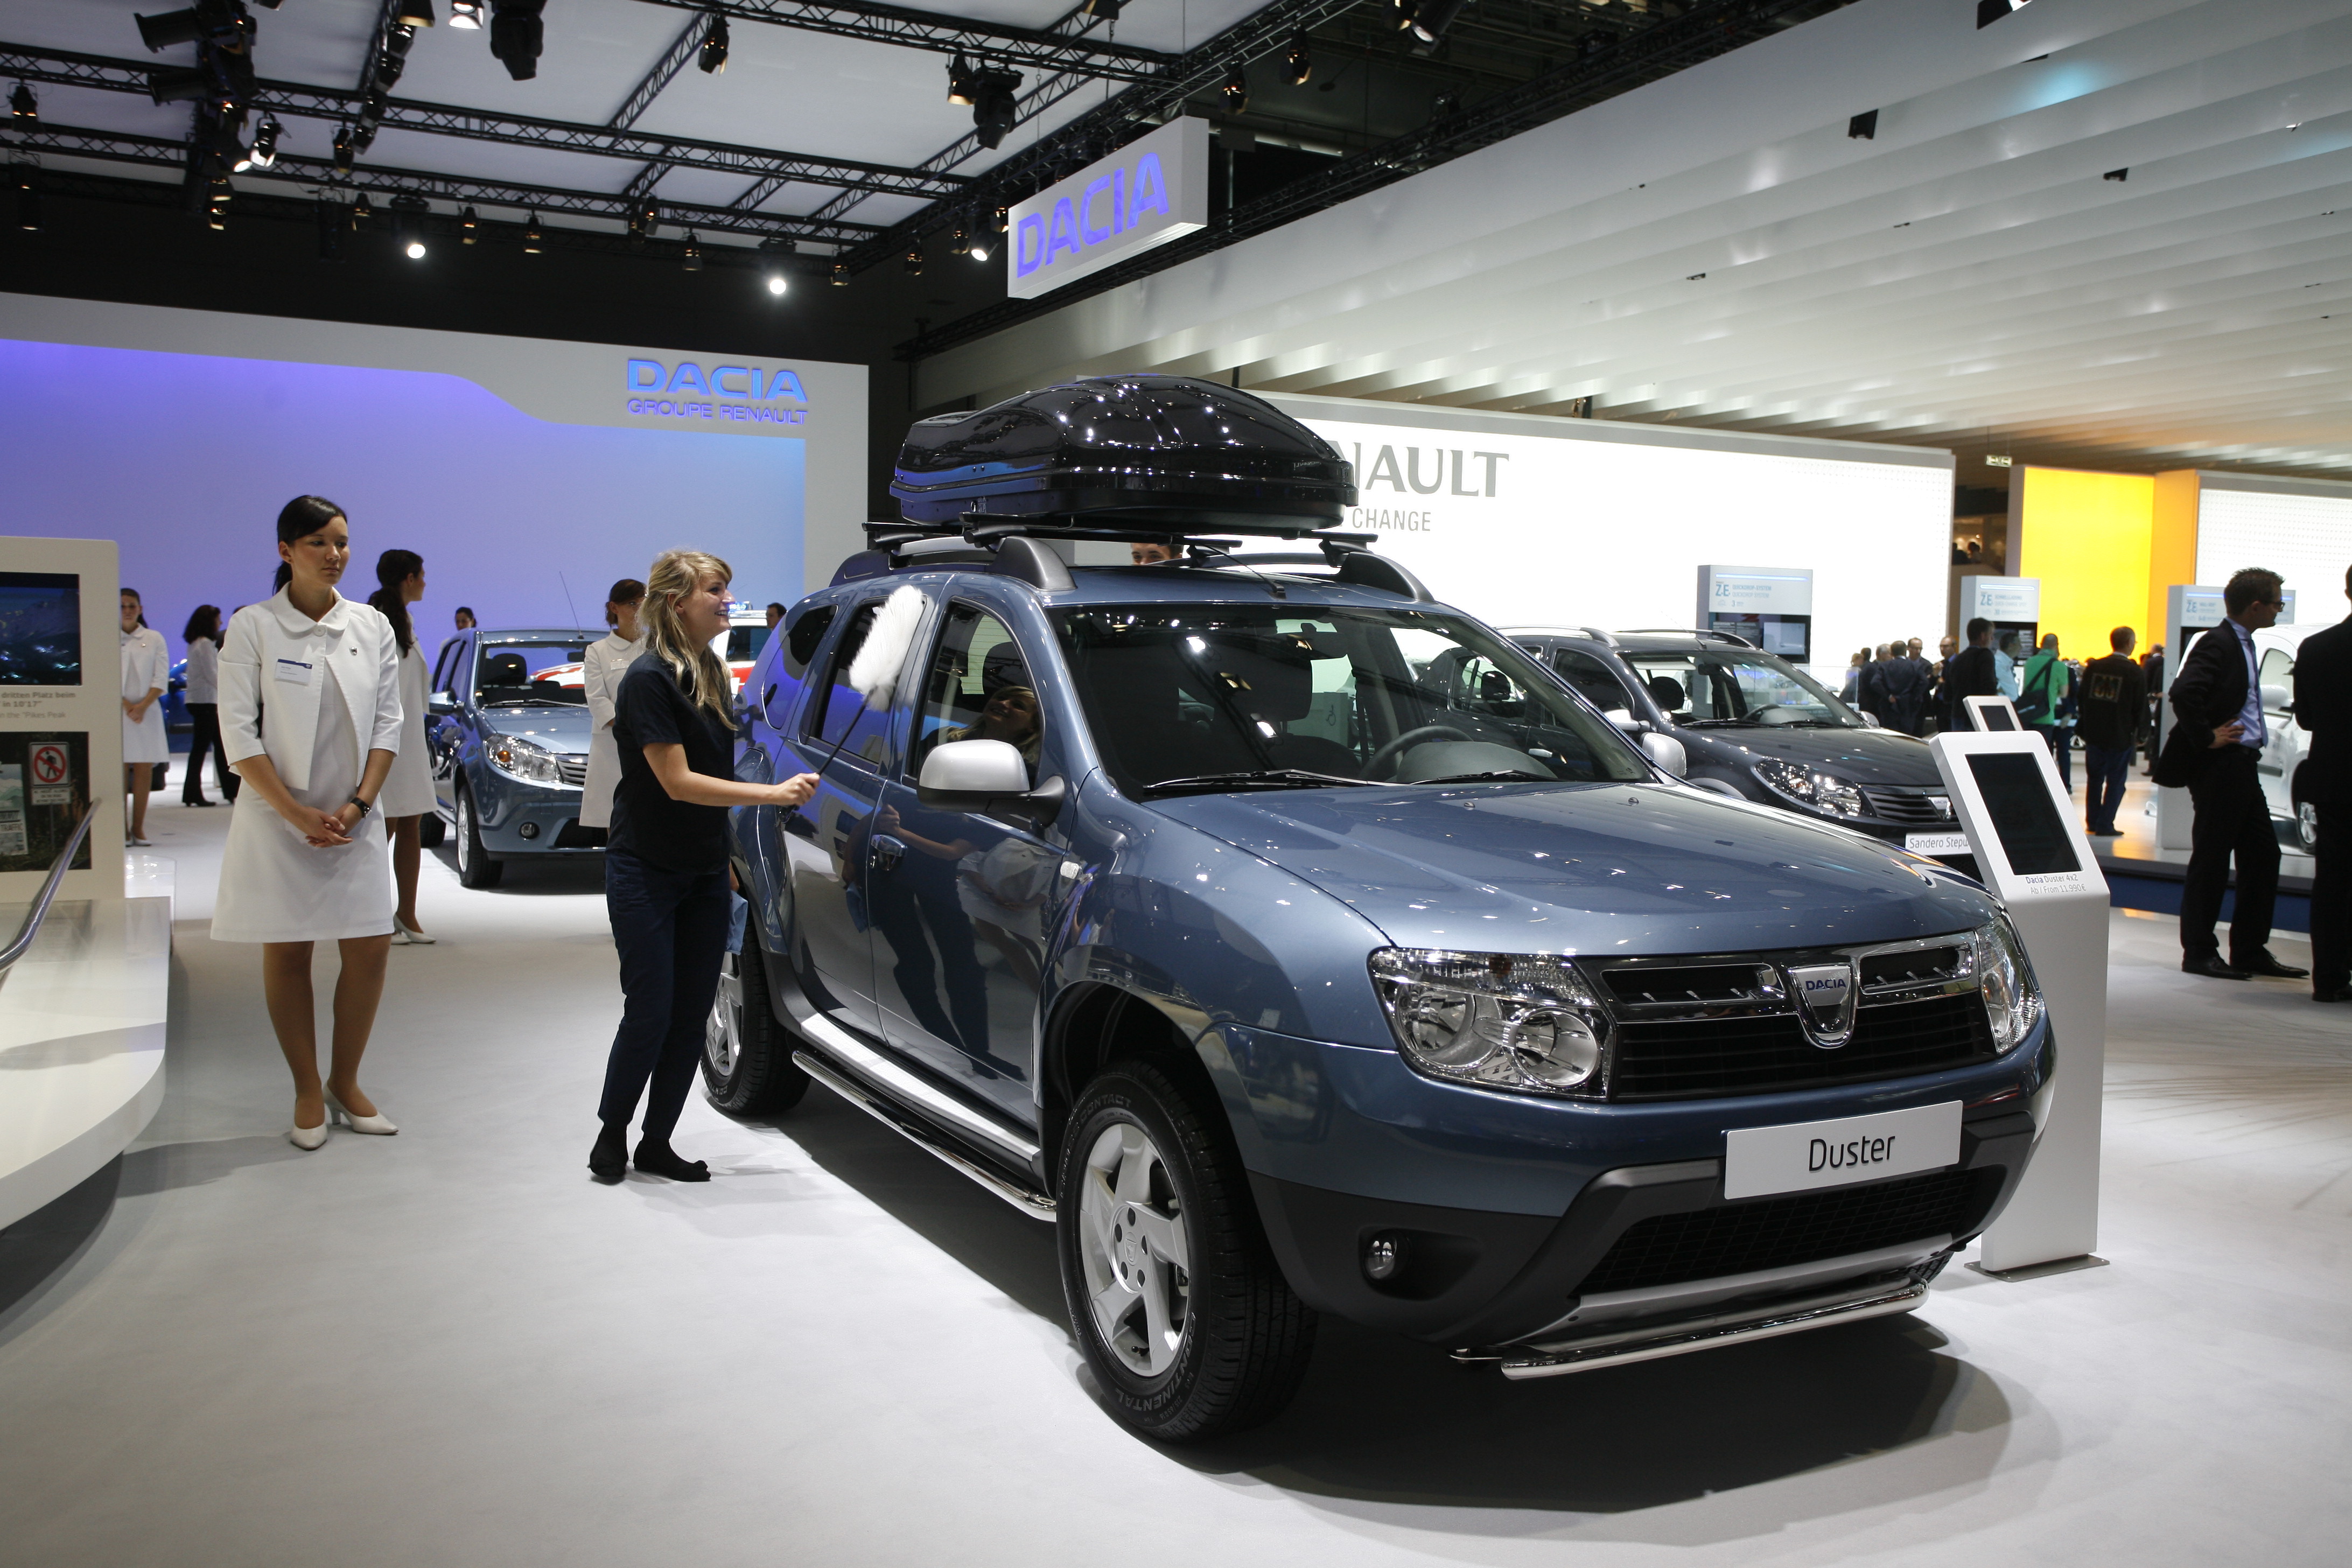 O parte din productia de Dacia Sandero se muta in Maroc. La Mioveni se face Duster pe banda rulanta